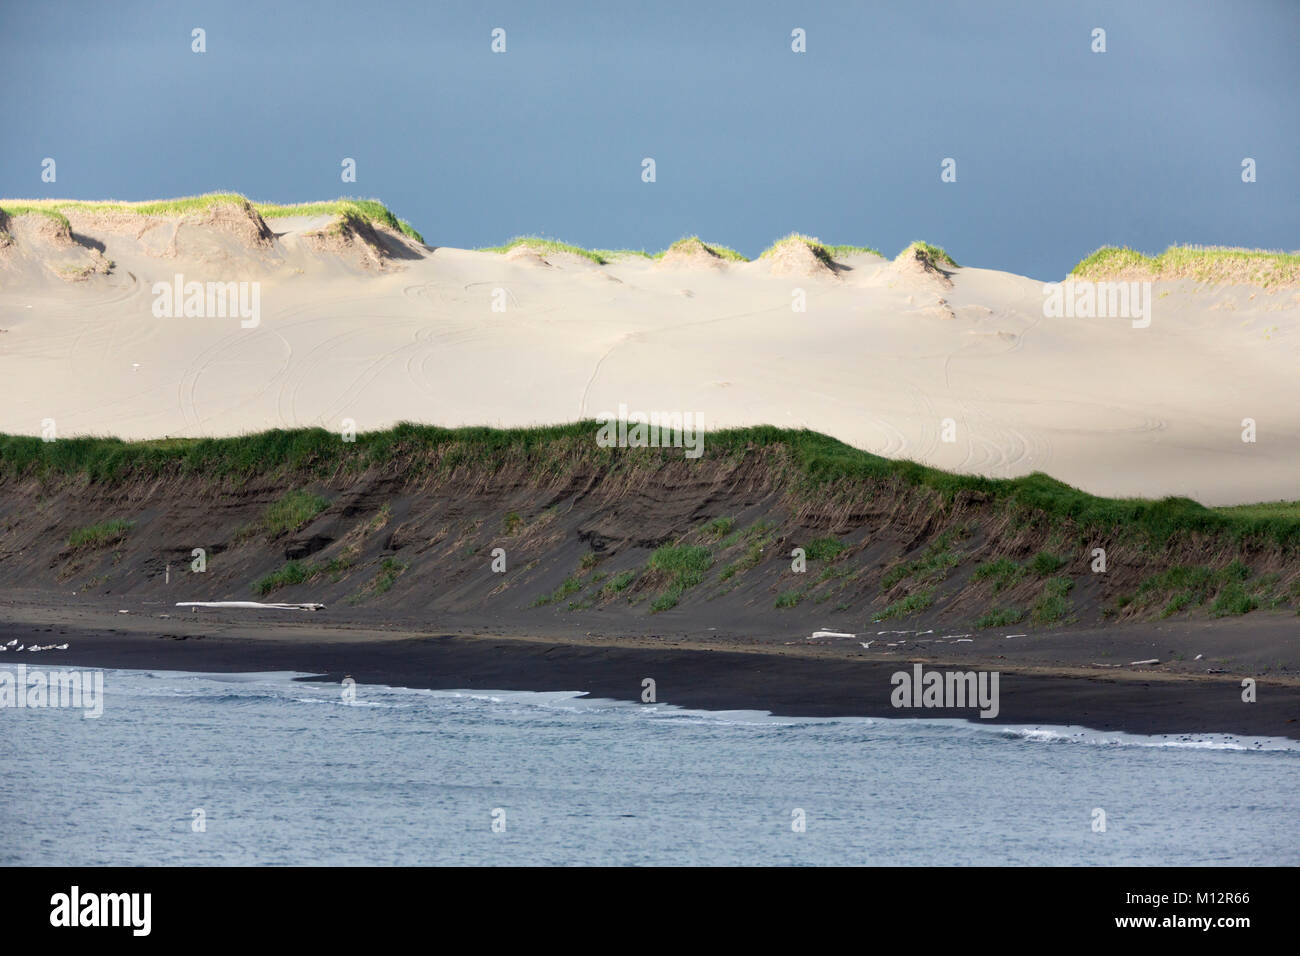 La luz del sol ilumina las dunas a lo largo de la costa de la isla de San Pablo, en el sudoeste de Alaska. Foto de stock